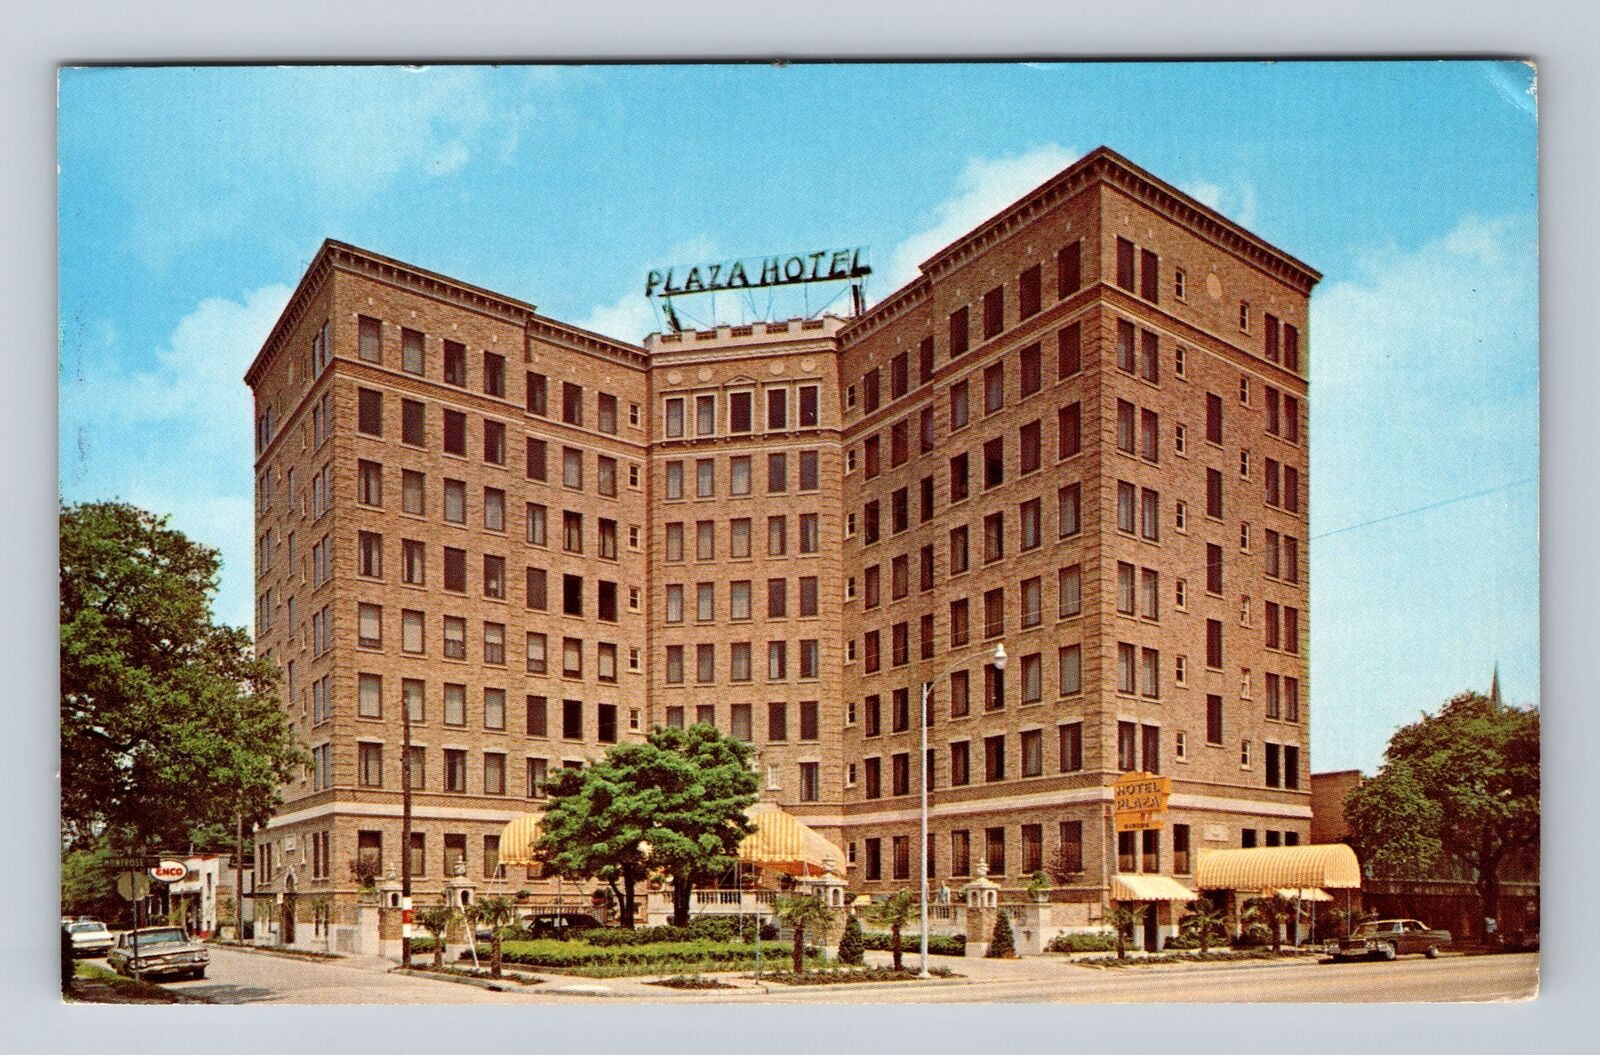 Houston TX-Texas, the Hotel Plaza, Advertising, Antique Vintage Postcard